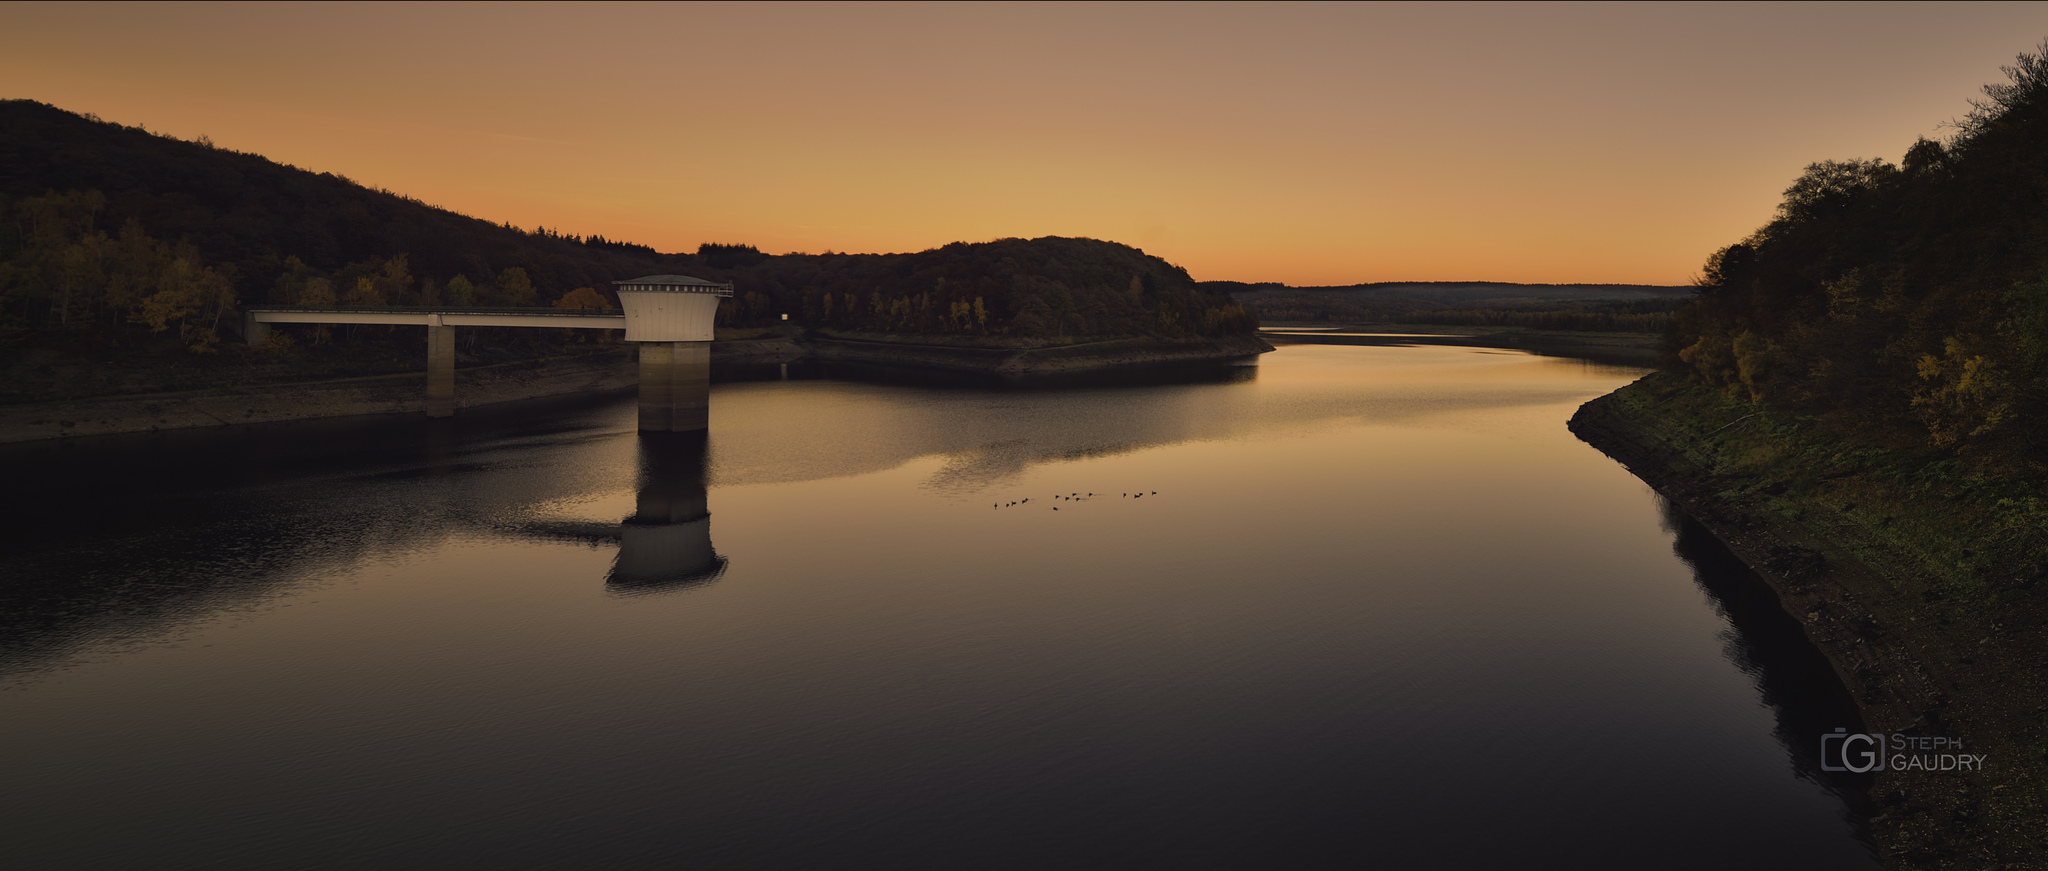 Coucher de soleil sur le barrage de la Gileppe [Click to start slideshow]